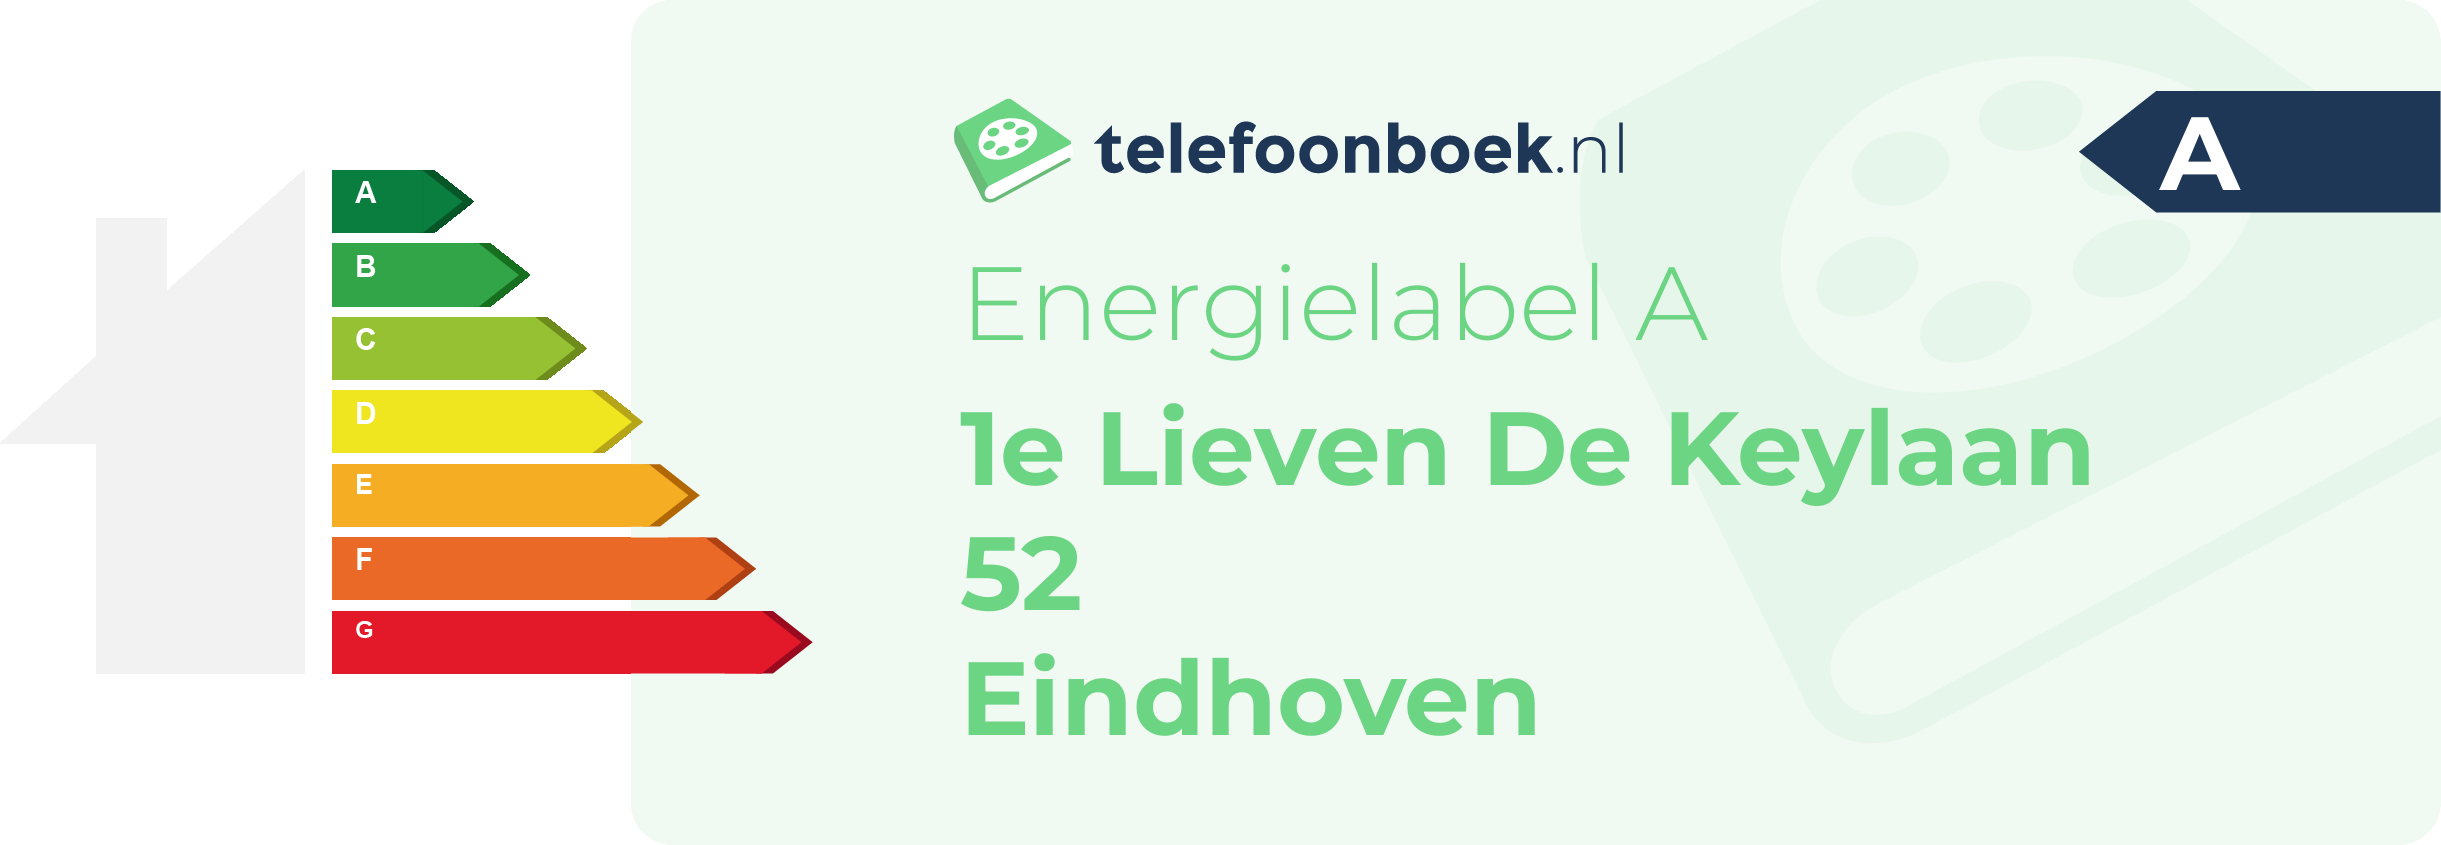 Energielabel 1e Lieven De Keylaan 52 Eindhoven